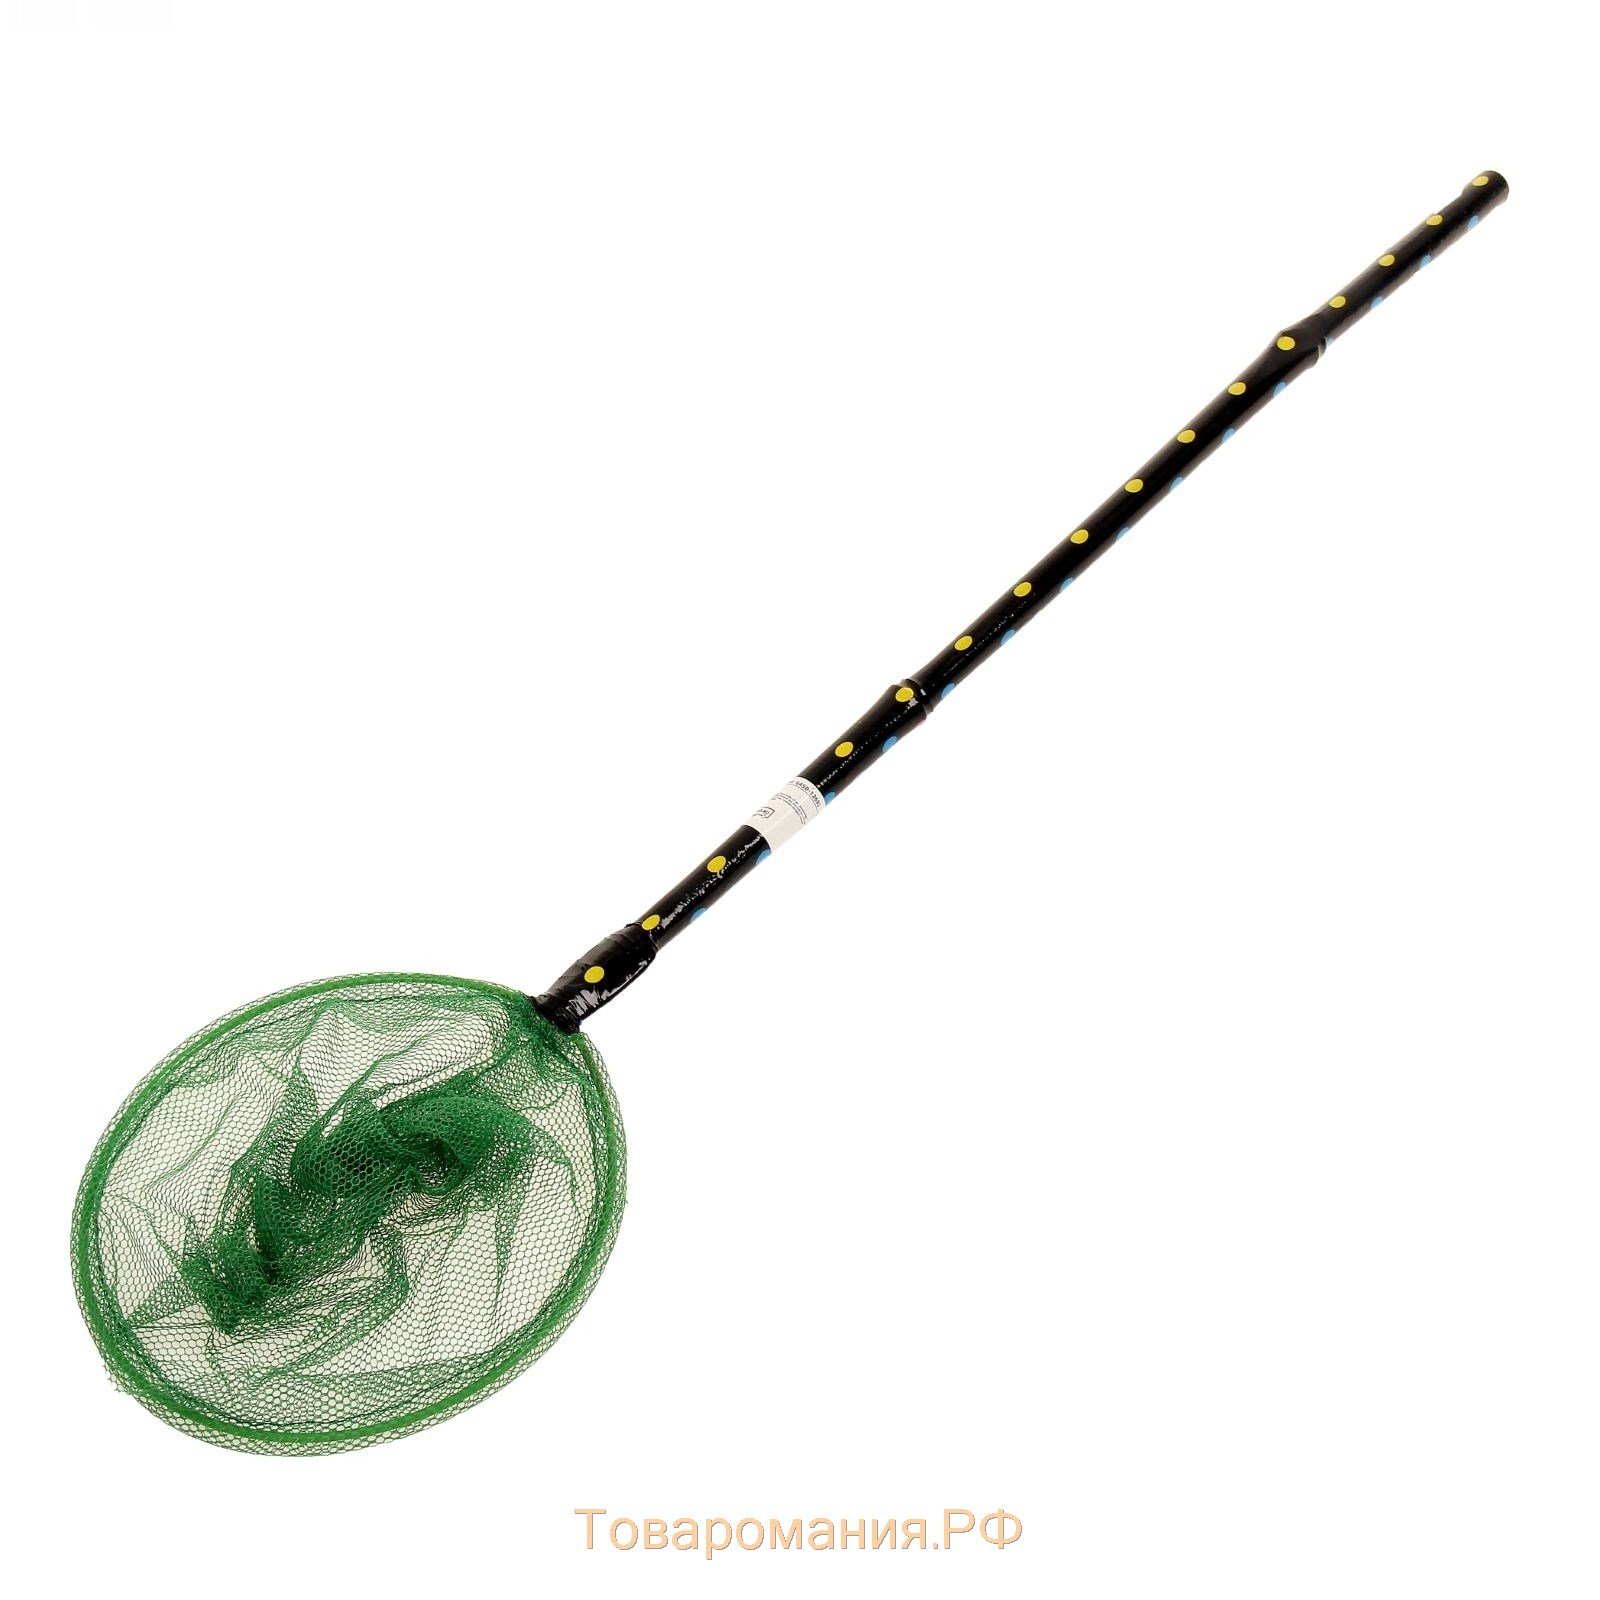 Сачок детский бамбуковая ручка 50 см в горох, диаметр: 20 см, цвета МИКС